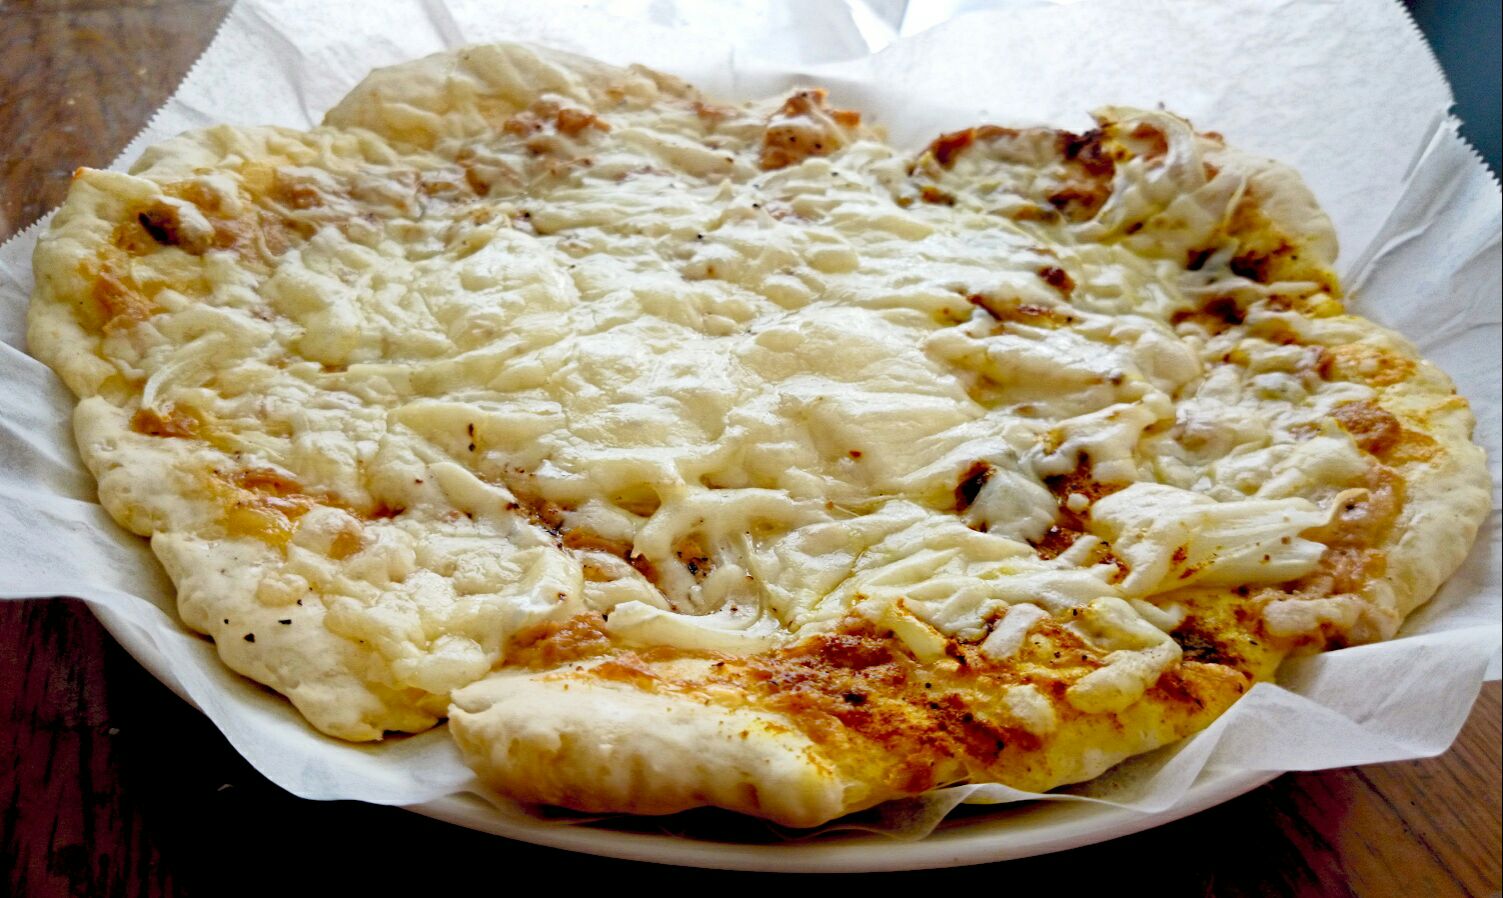 ツナタマピザ と ツナカレーピザ